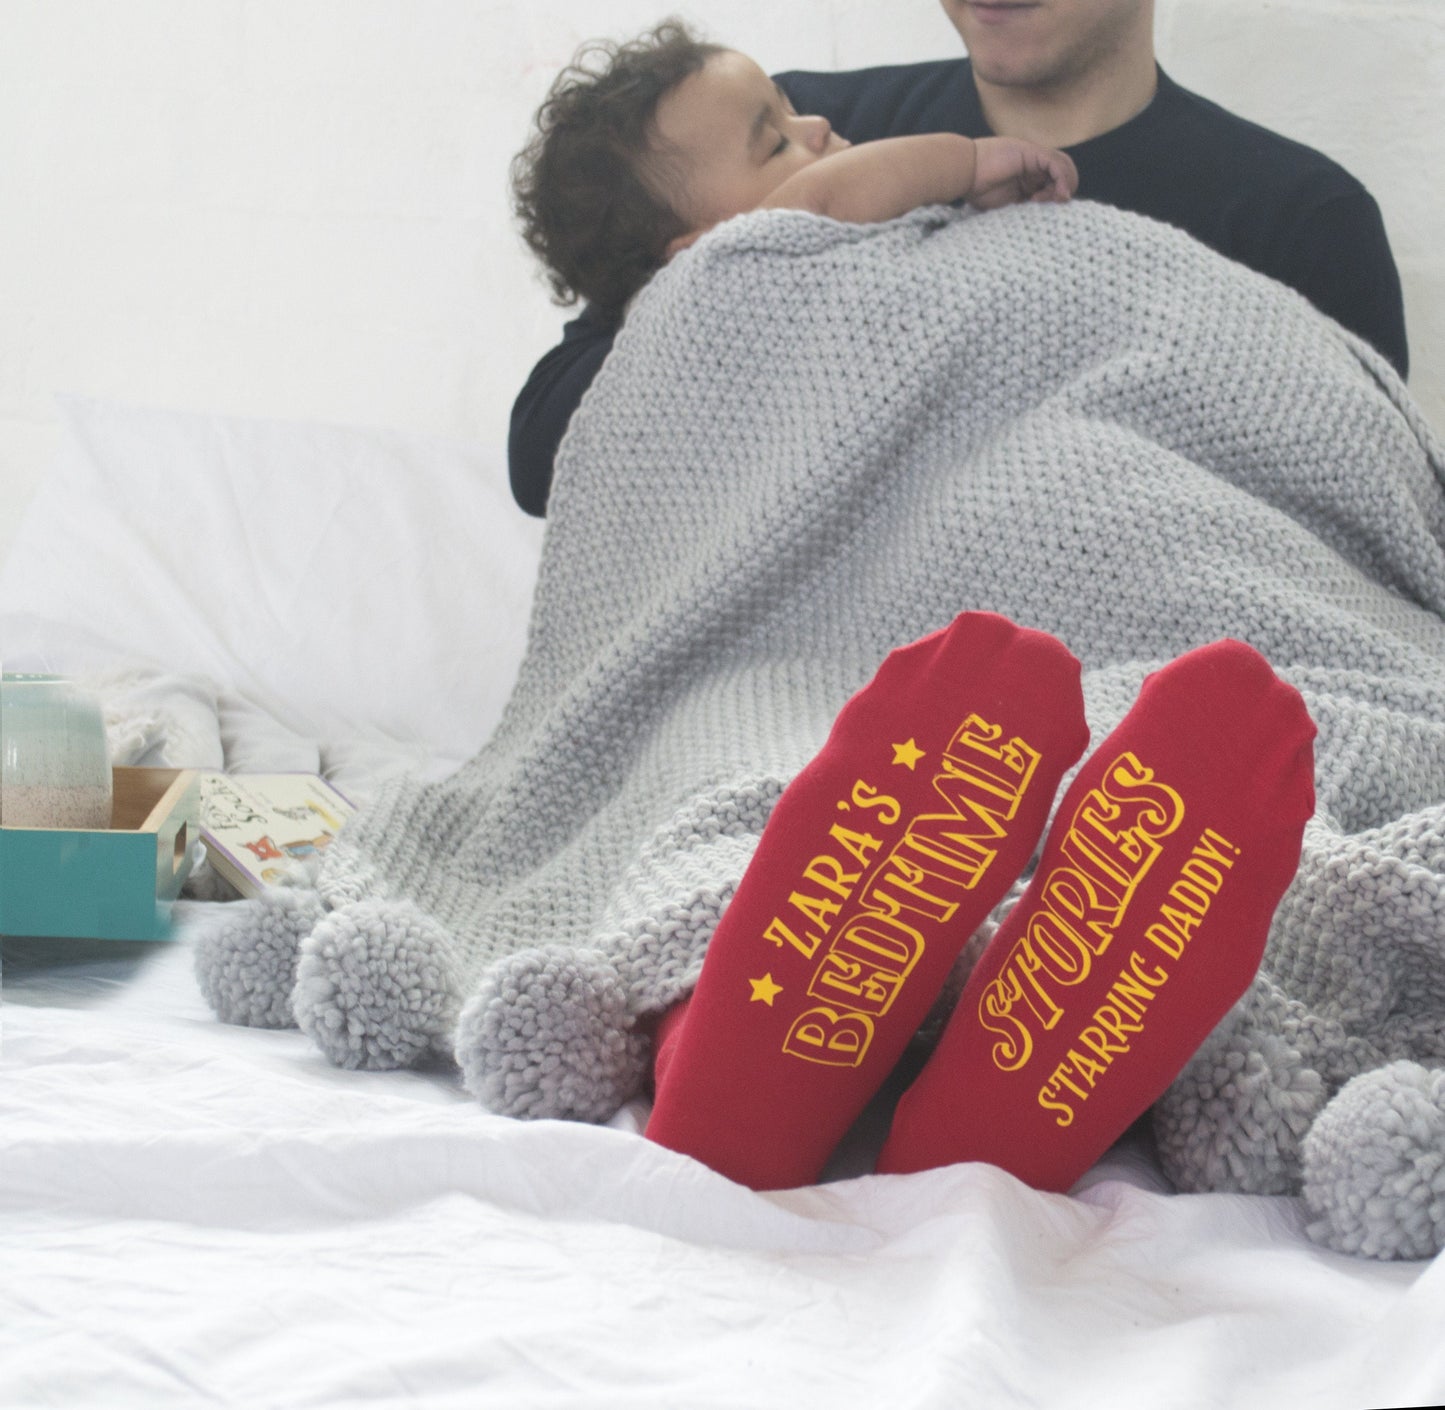 Circus Bedtime Story Socks, Socks, - ALPHS 